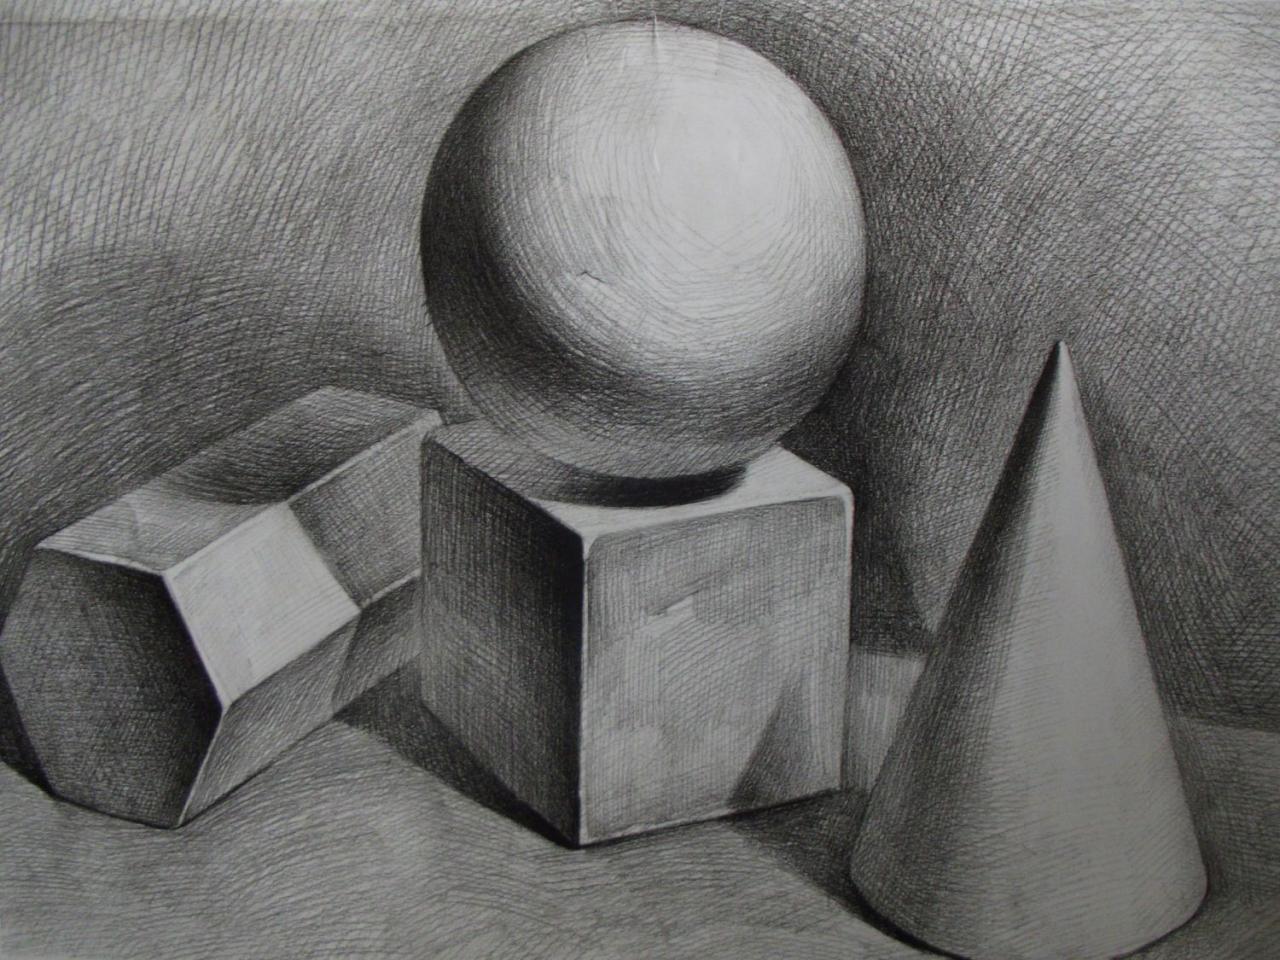 少儿学素描系列教程之三四正方体、球体、六棱柱、圆锥体的组合画法 预览图